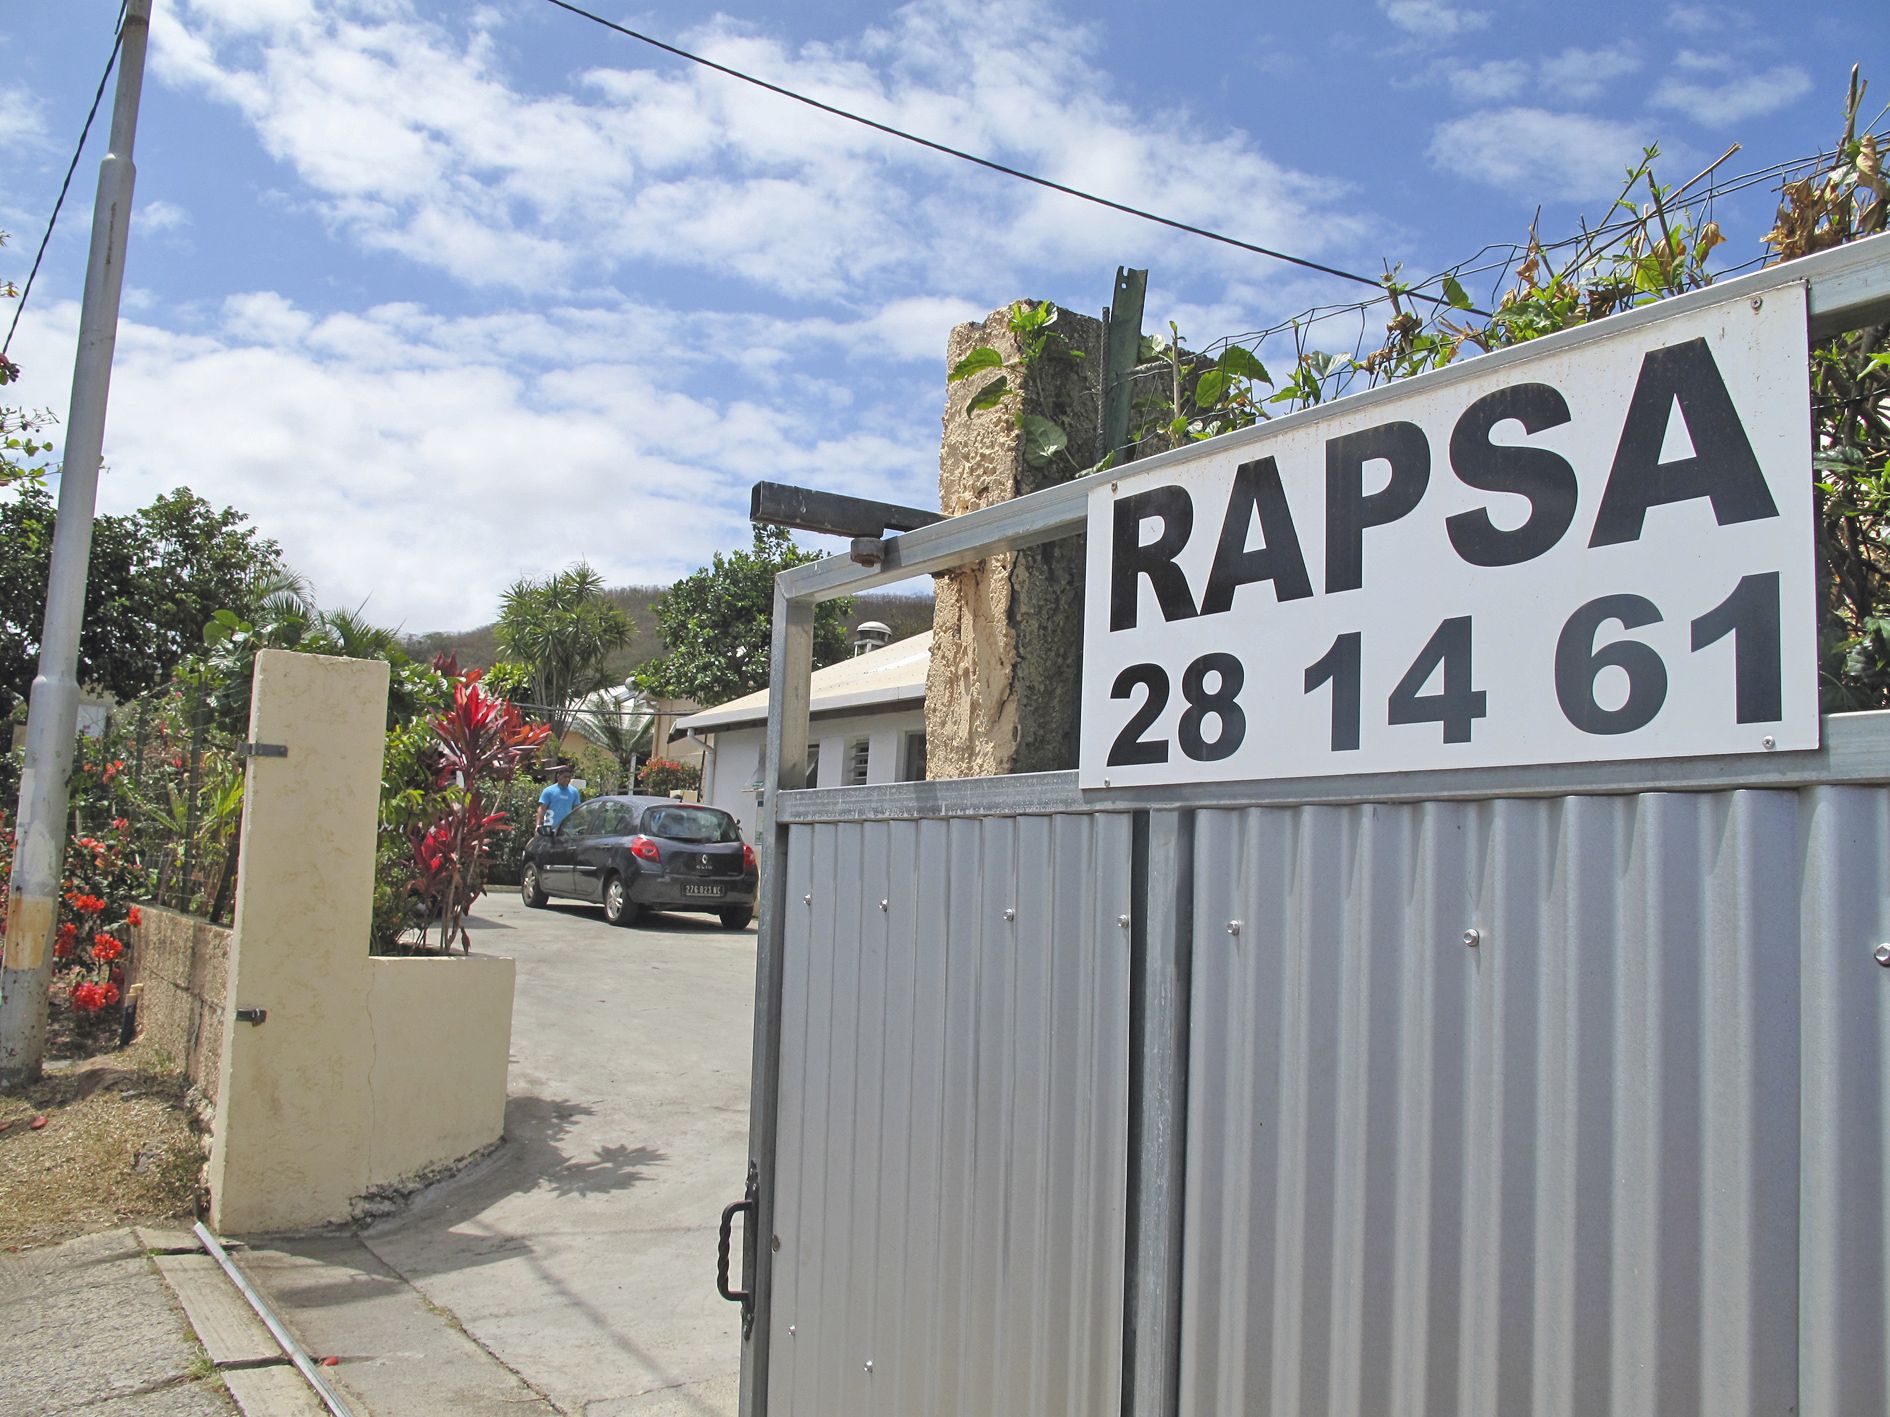 La RAPSA fête ses 30 ans cette année. L’occasion pour l’association de faire entendre sa parole et ainsi de demander de l’aide pour installer un second centre en province Nord.